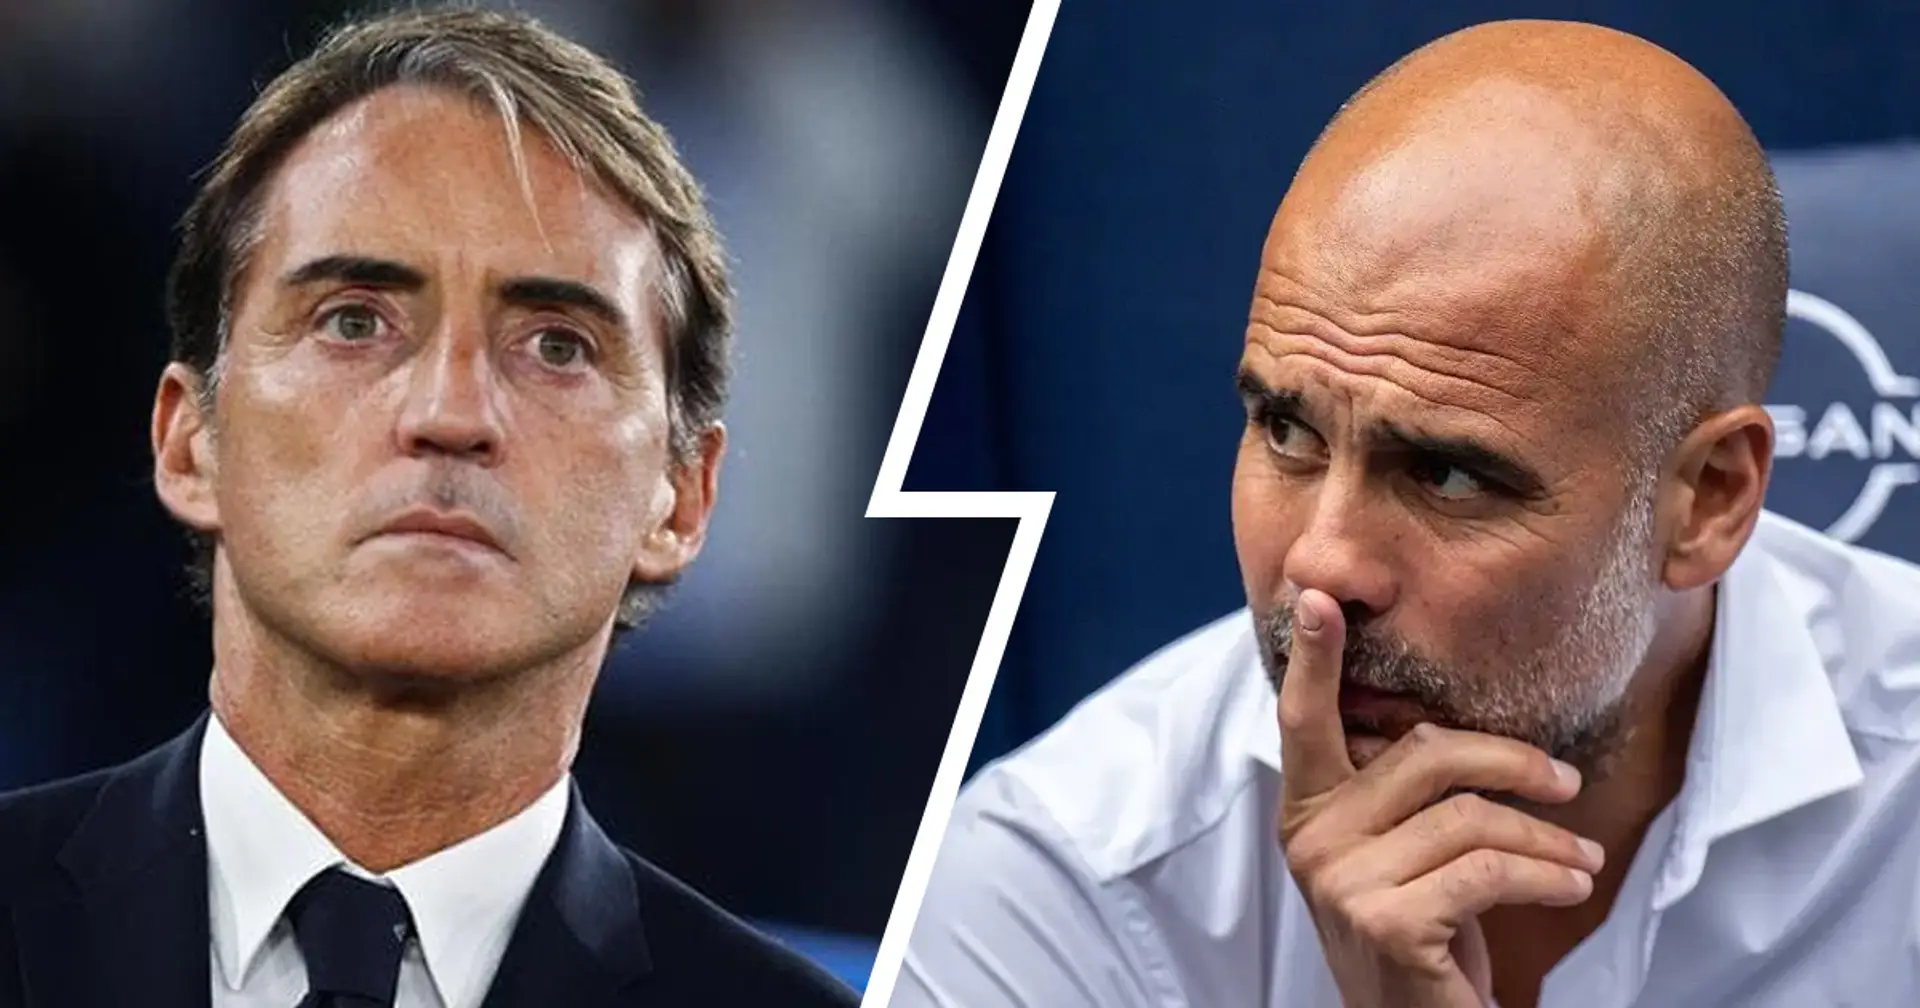 Mancini übertrifft Guardiola: Saudi-Arabiens Cheftrainer ist der bestbezahlte Trainer der Welt 